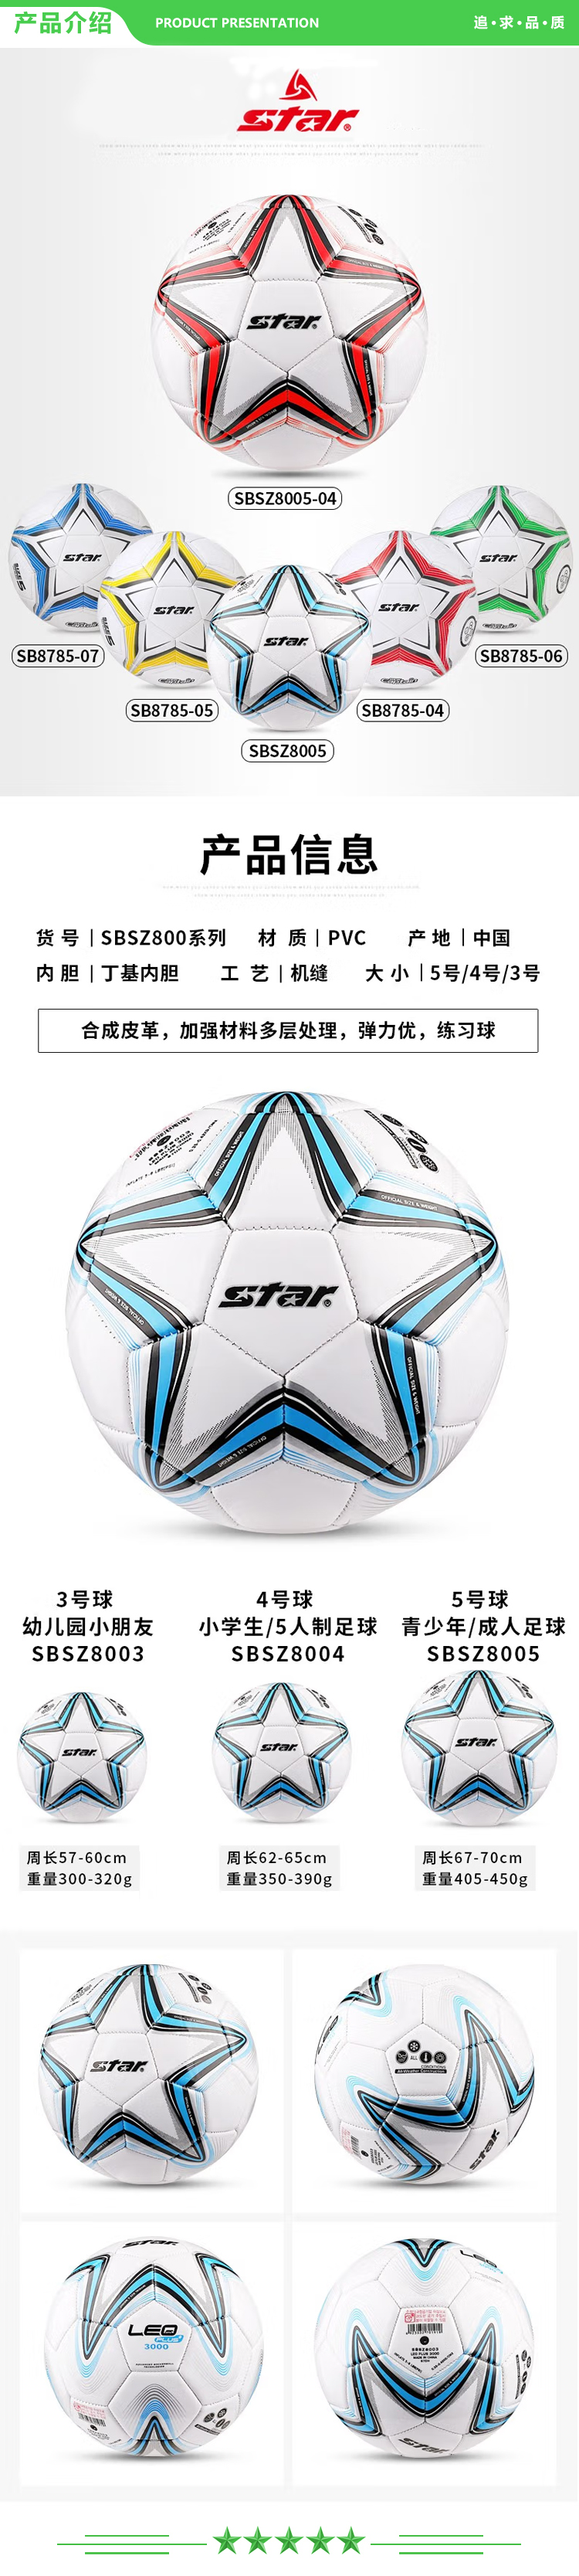 世达 star SBSZ8005【入门款】蓝色 足球 5号初中学生耐磨合成皮革.jpg